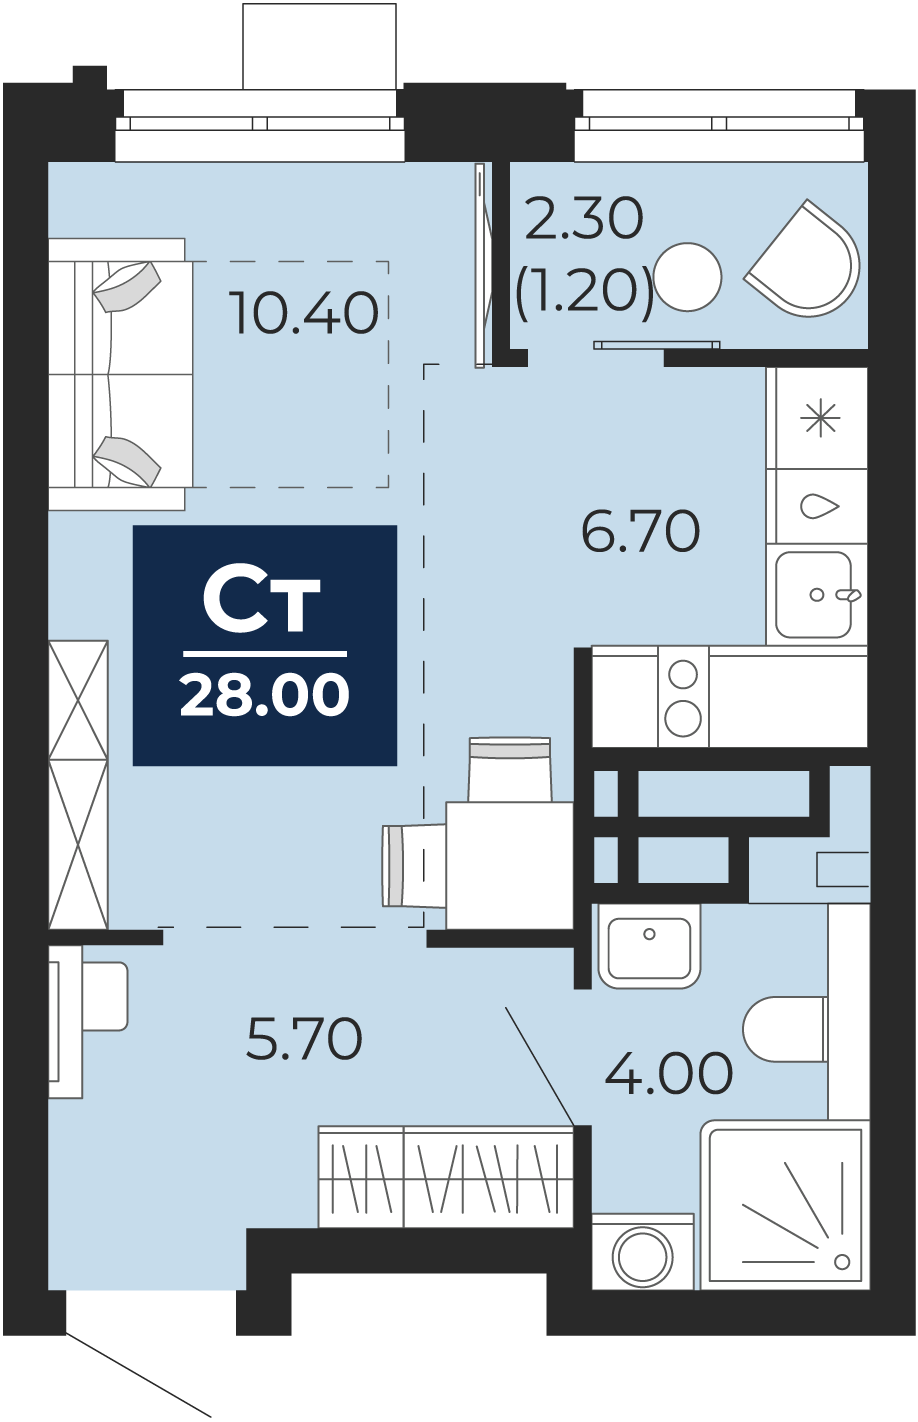 Квартира № 128, Студия, 28 кв. м, 6 этаж